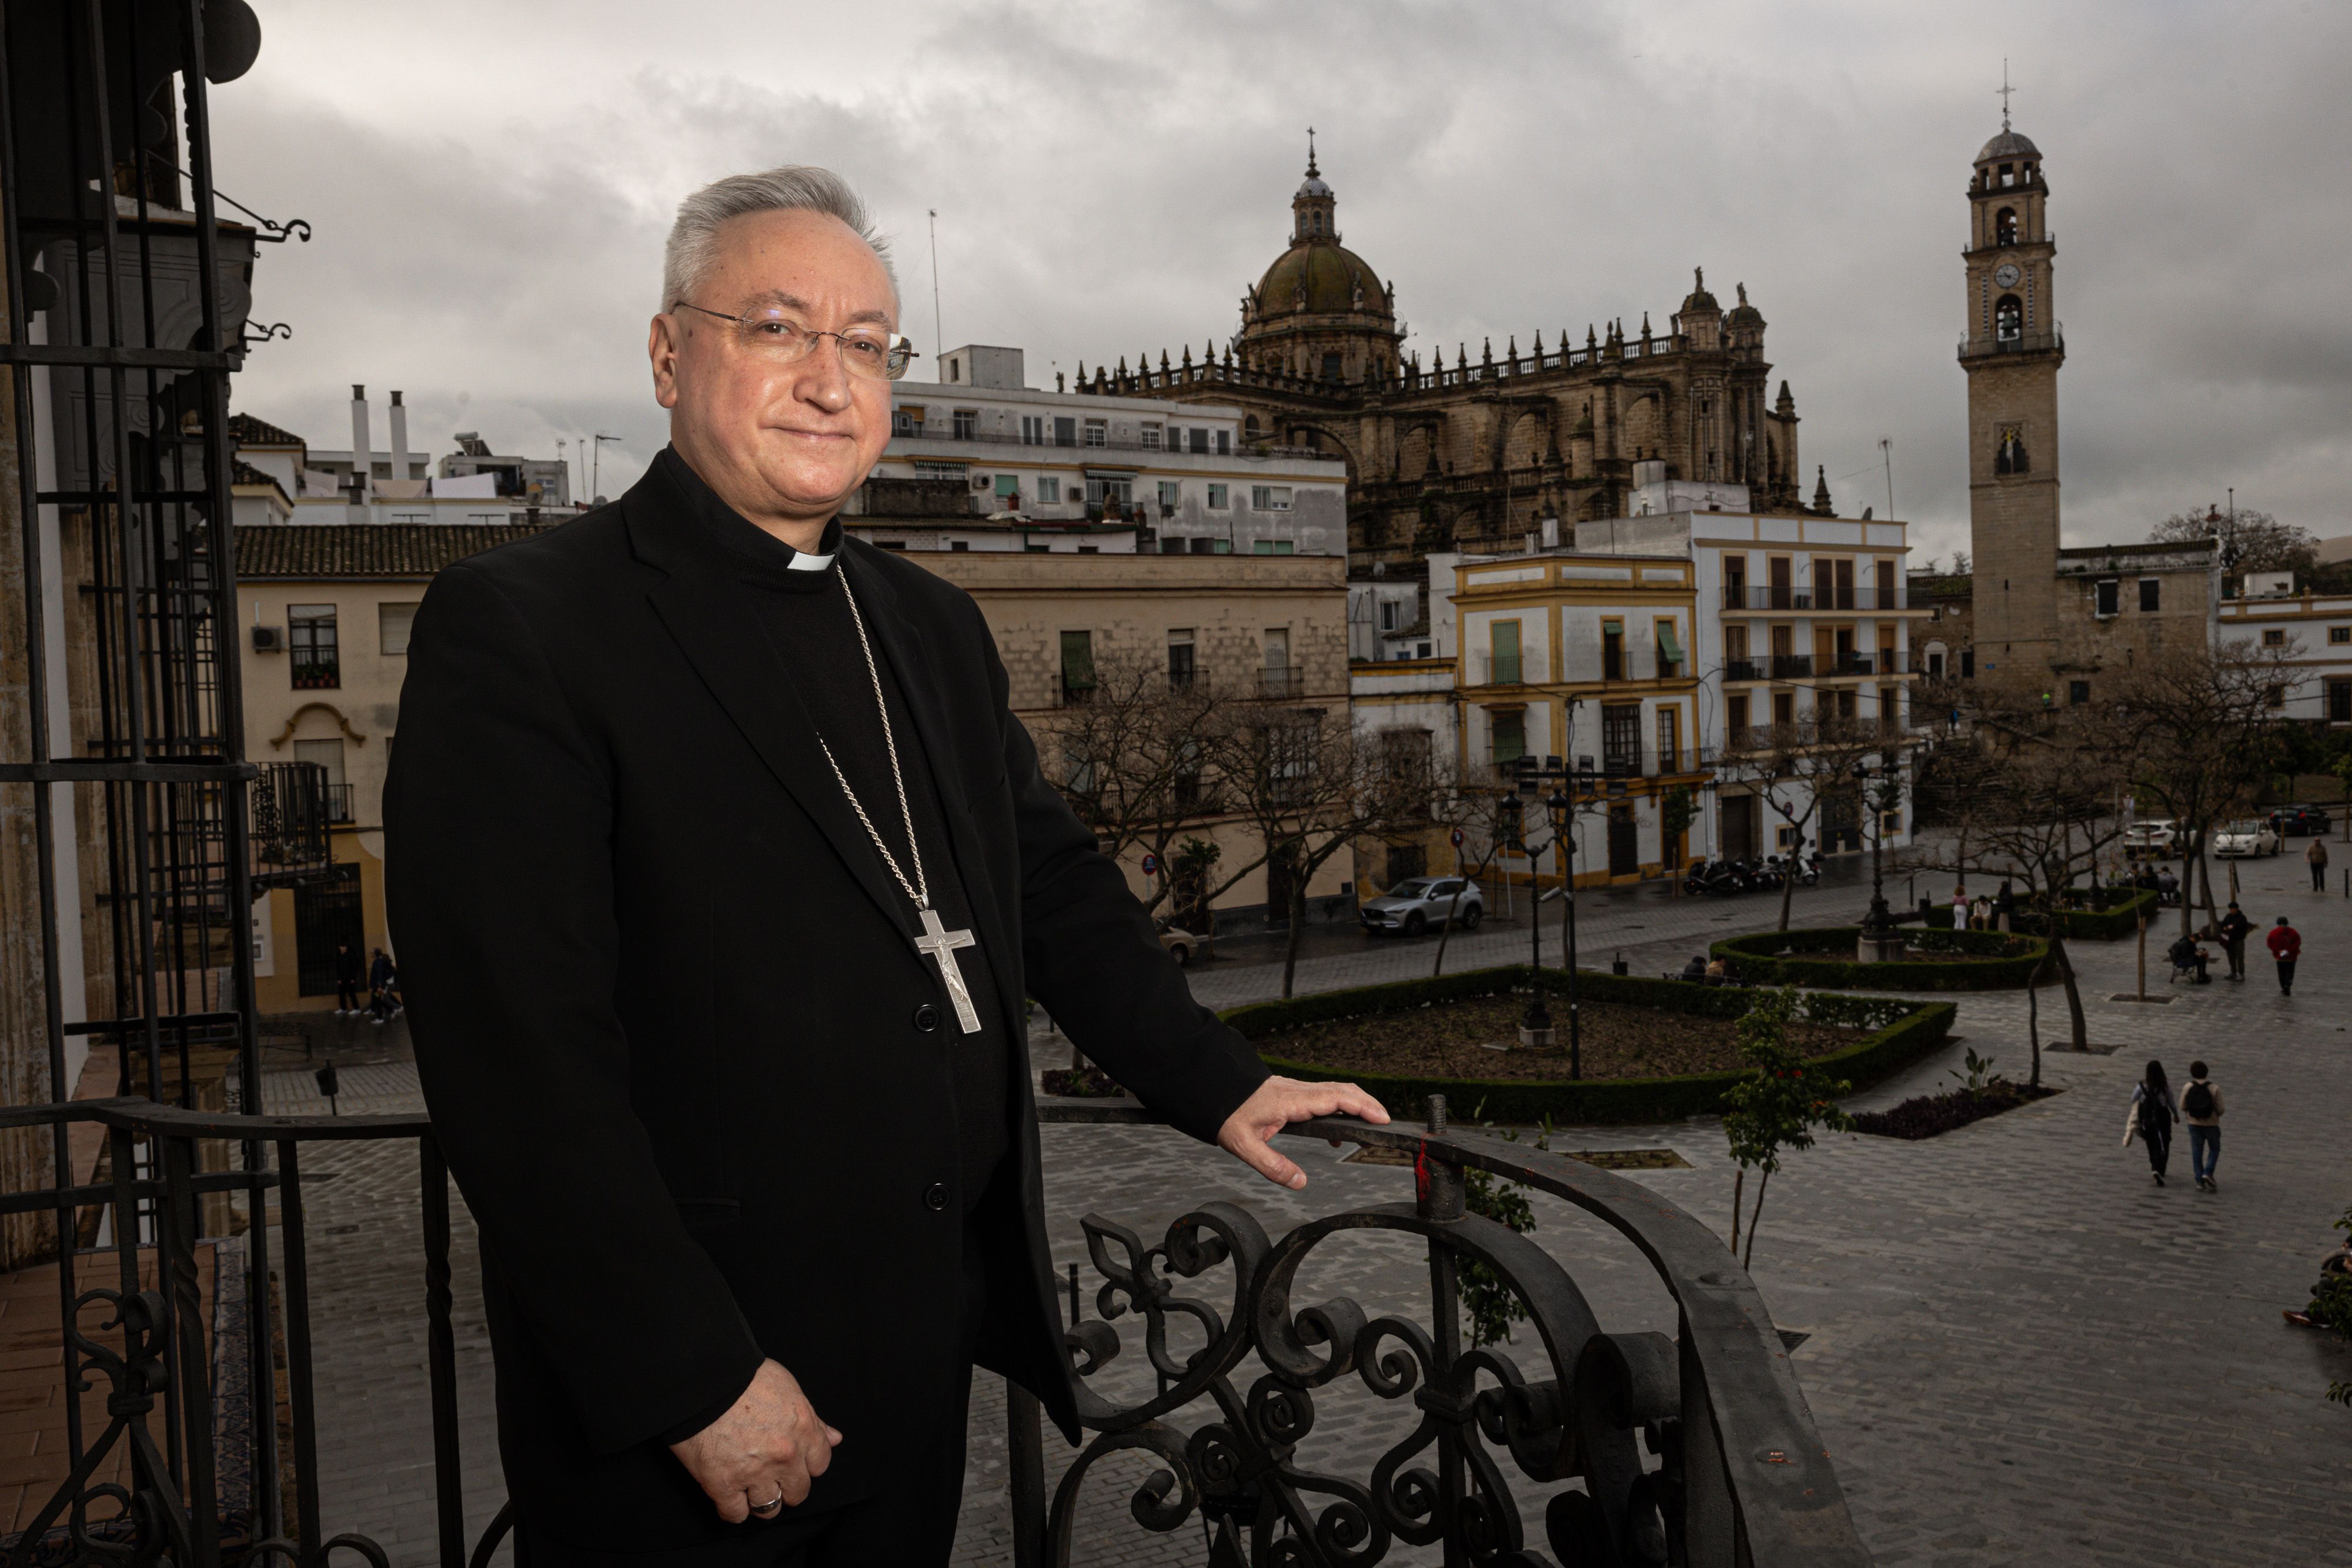 El obispo de Jerez, José Rico Pavés, posa en el balcón principal de Bertemati, con la Catedral al fondo, tras la entrevista concedida esta semana a lavozdelsur.es.